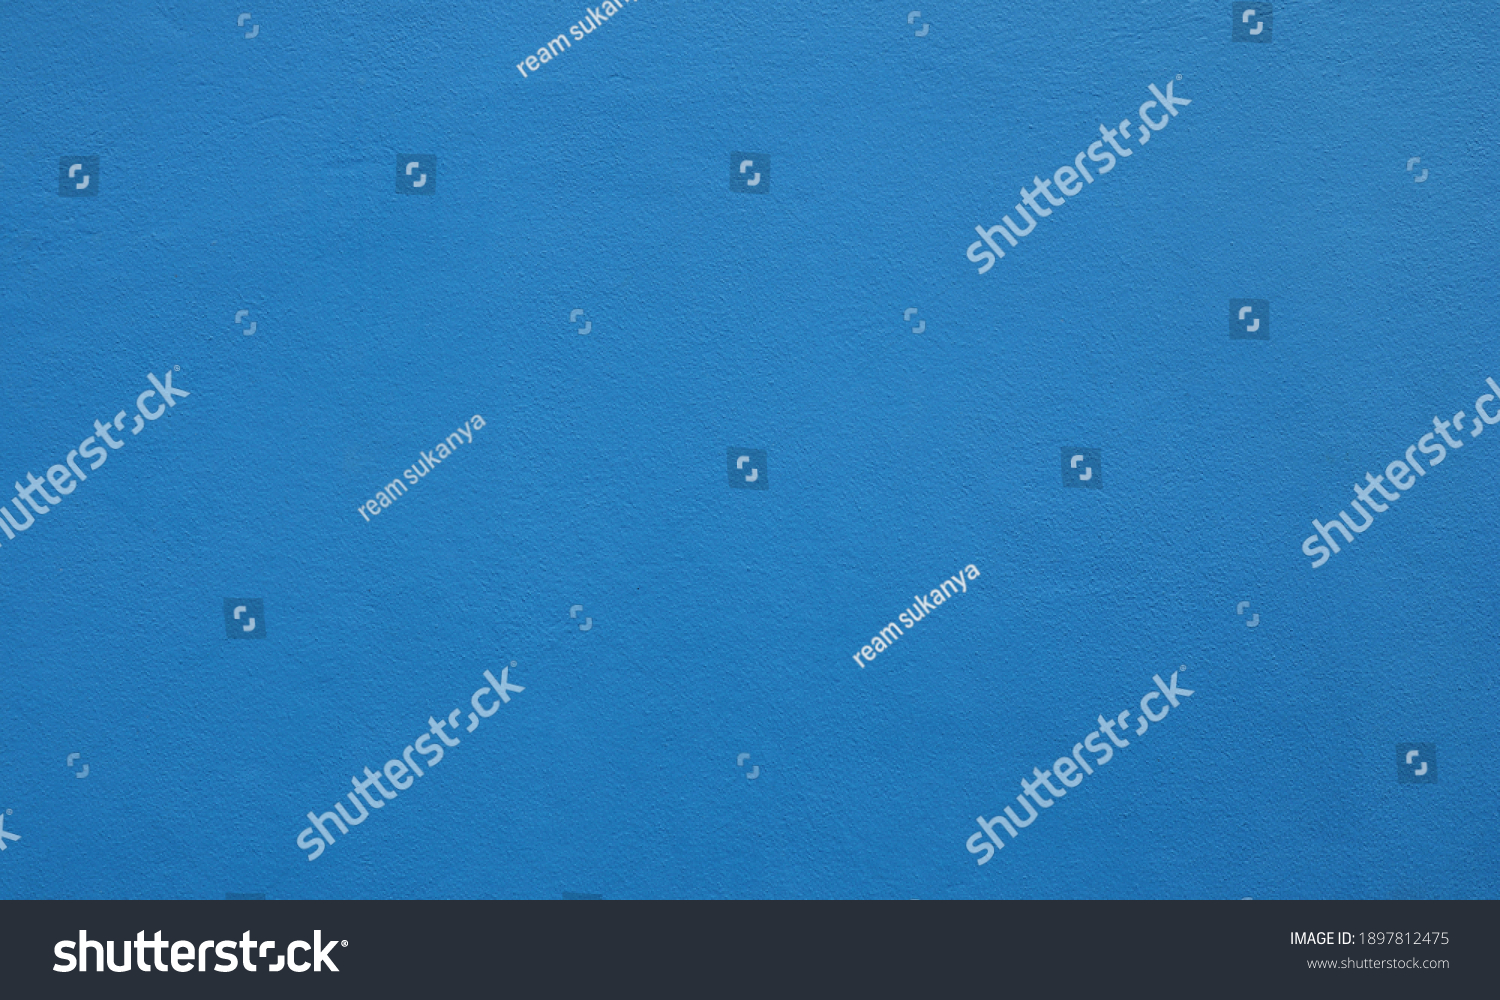 26,498 Cerulean colour Images, Stock Photos & Vectors | Shutterstock